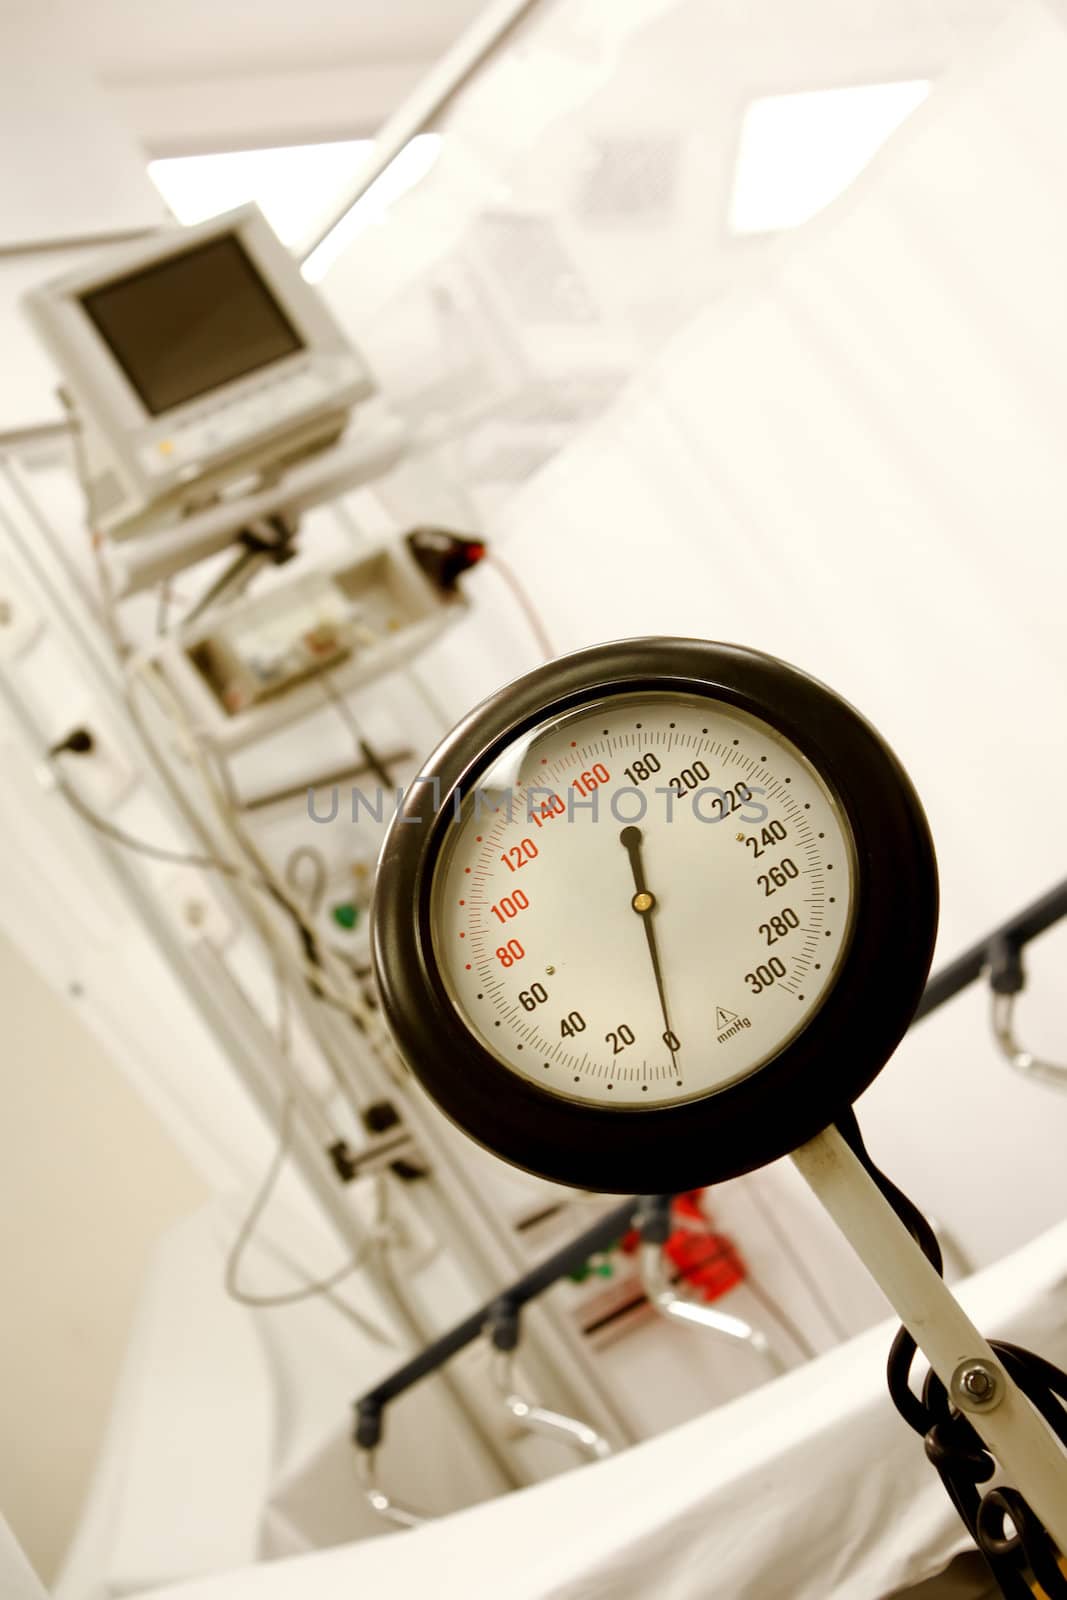 Blood pressure gauge by Erdosain